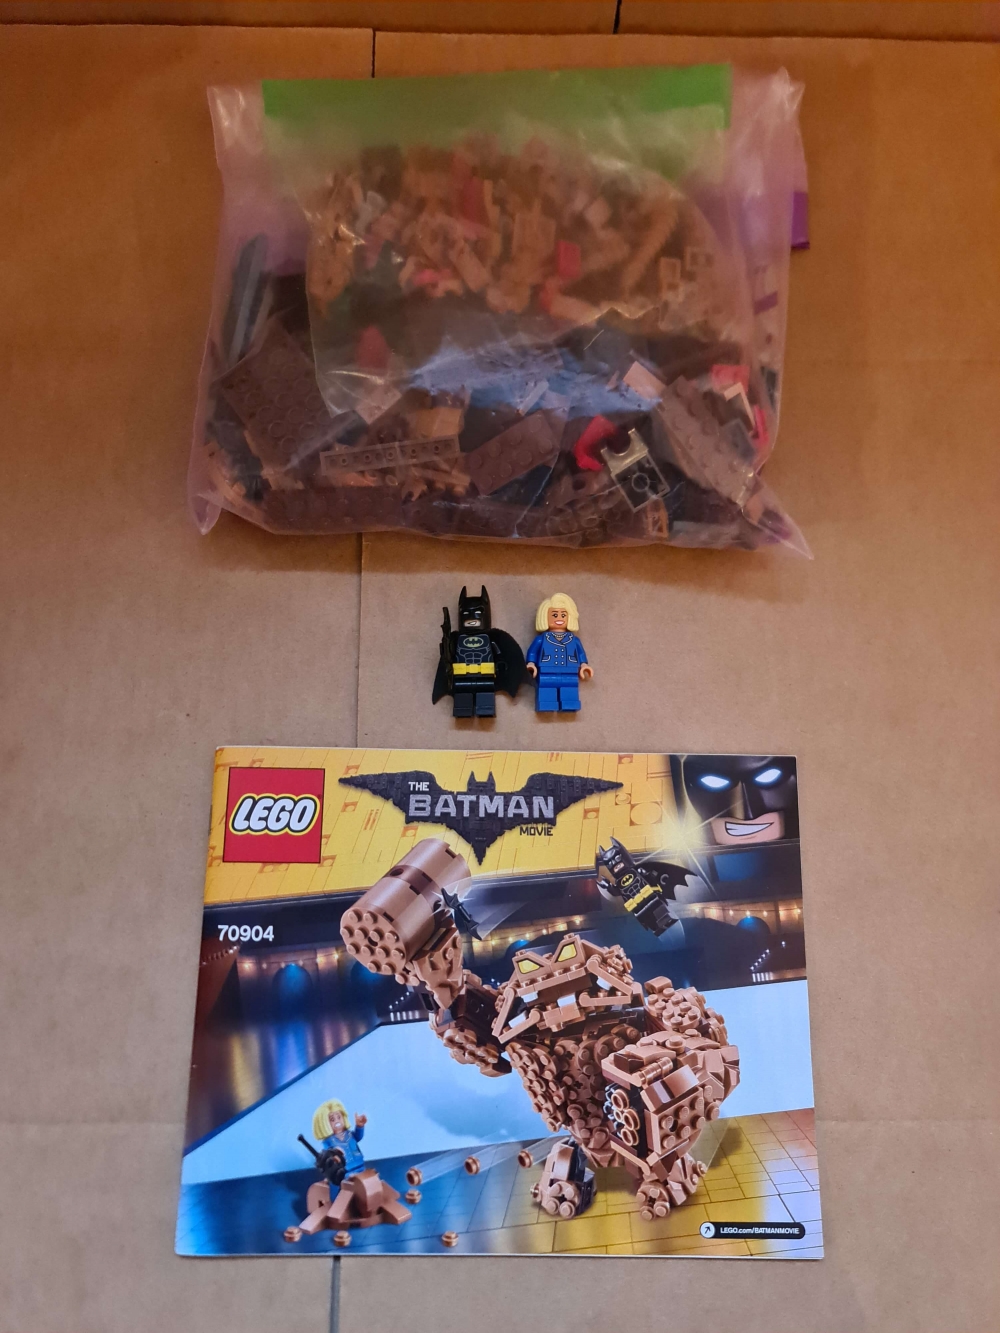 Lego 70904 fra Lego Super Heroes serien.

Meget pent. Komplett med manual